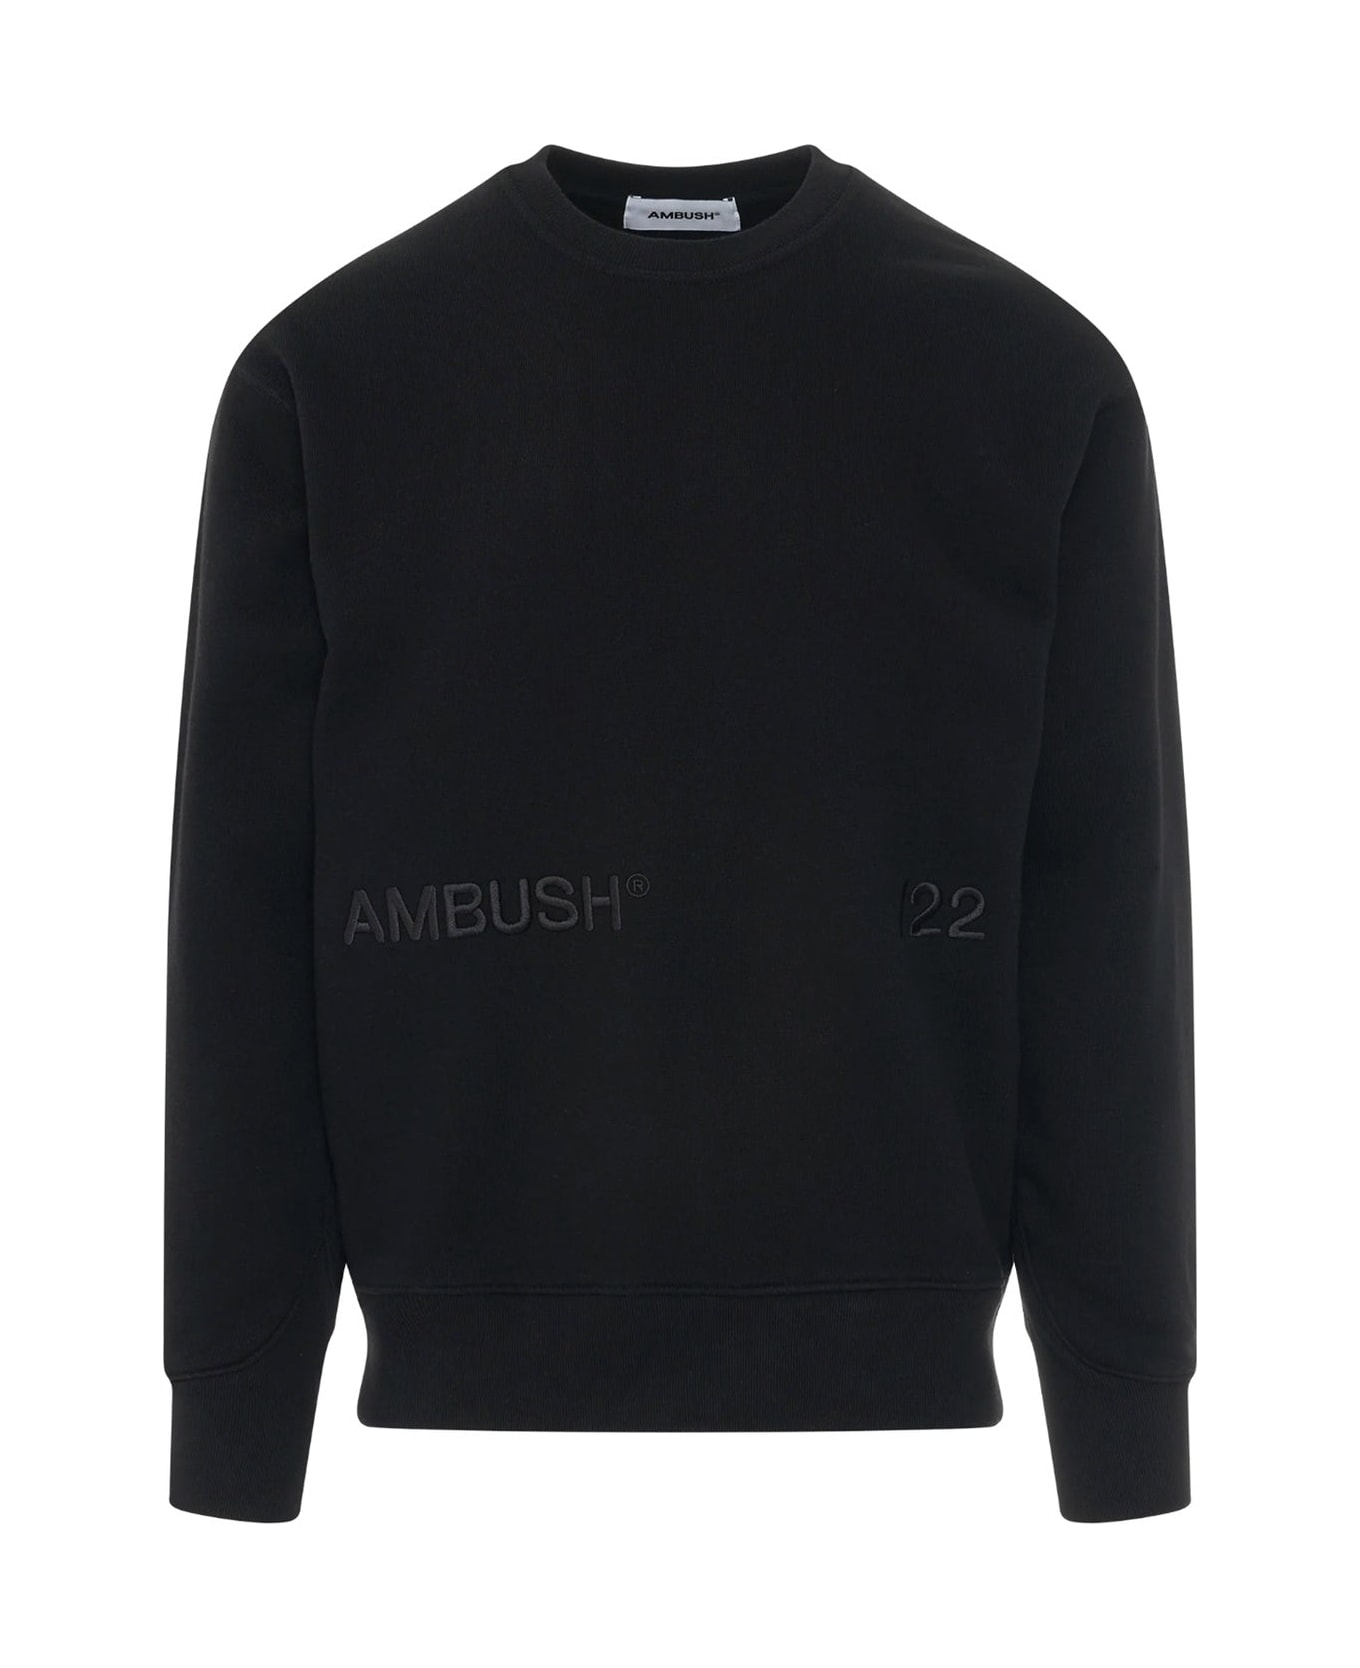 AMBUSH Sweatshirt - Black